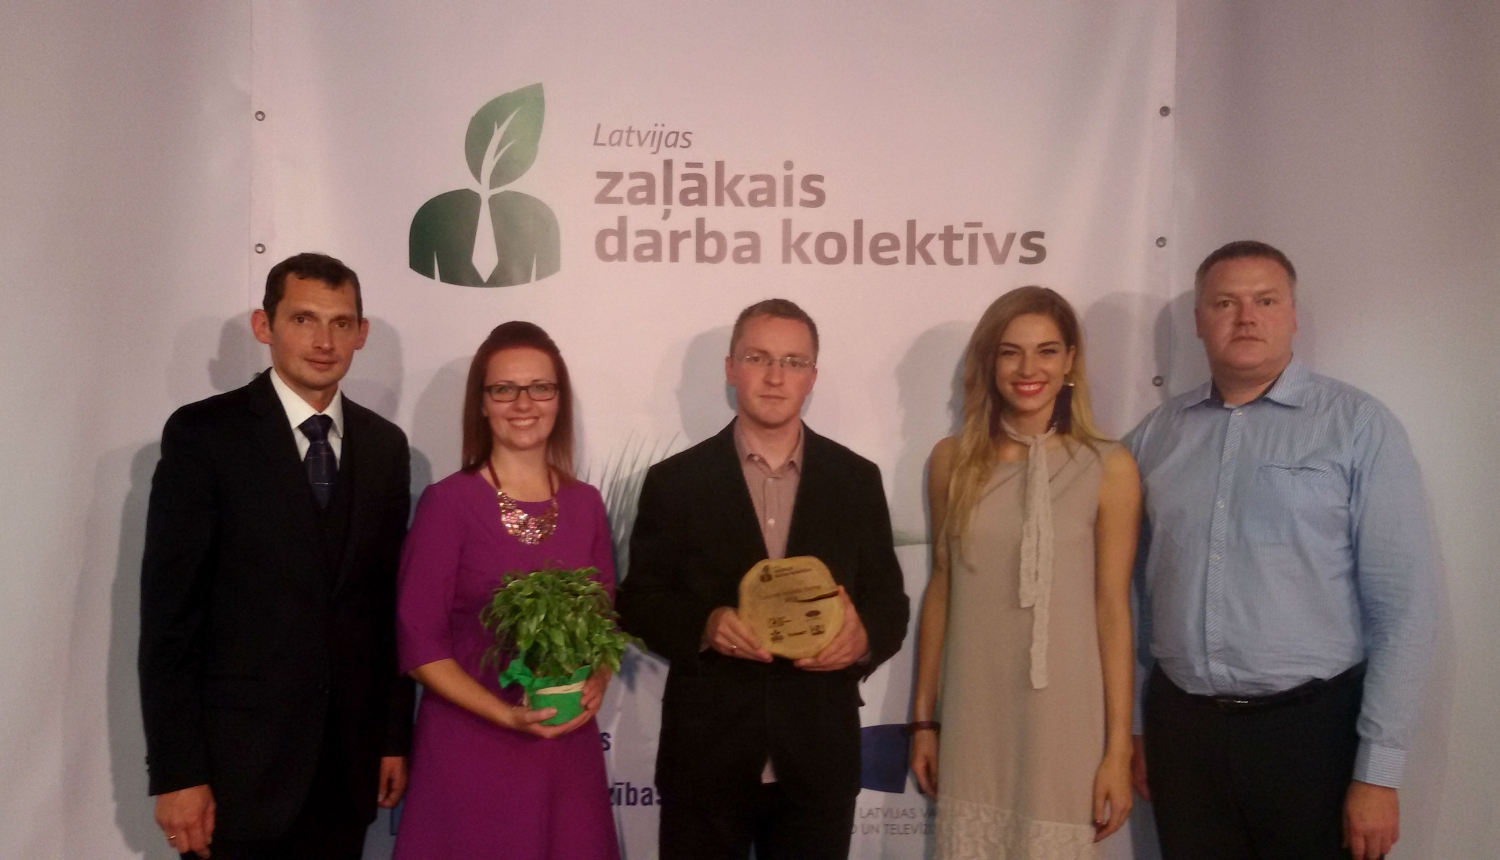 Tukuma novada Dome ir ieguvusi Zaļāko darba kolektīva titulu Latvijā!